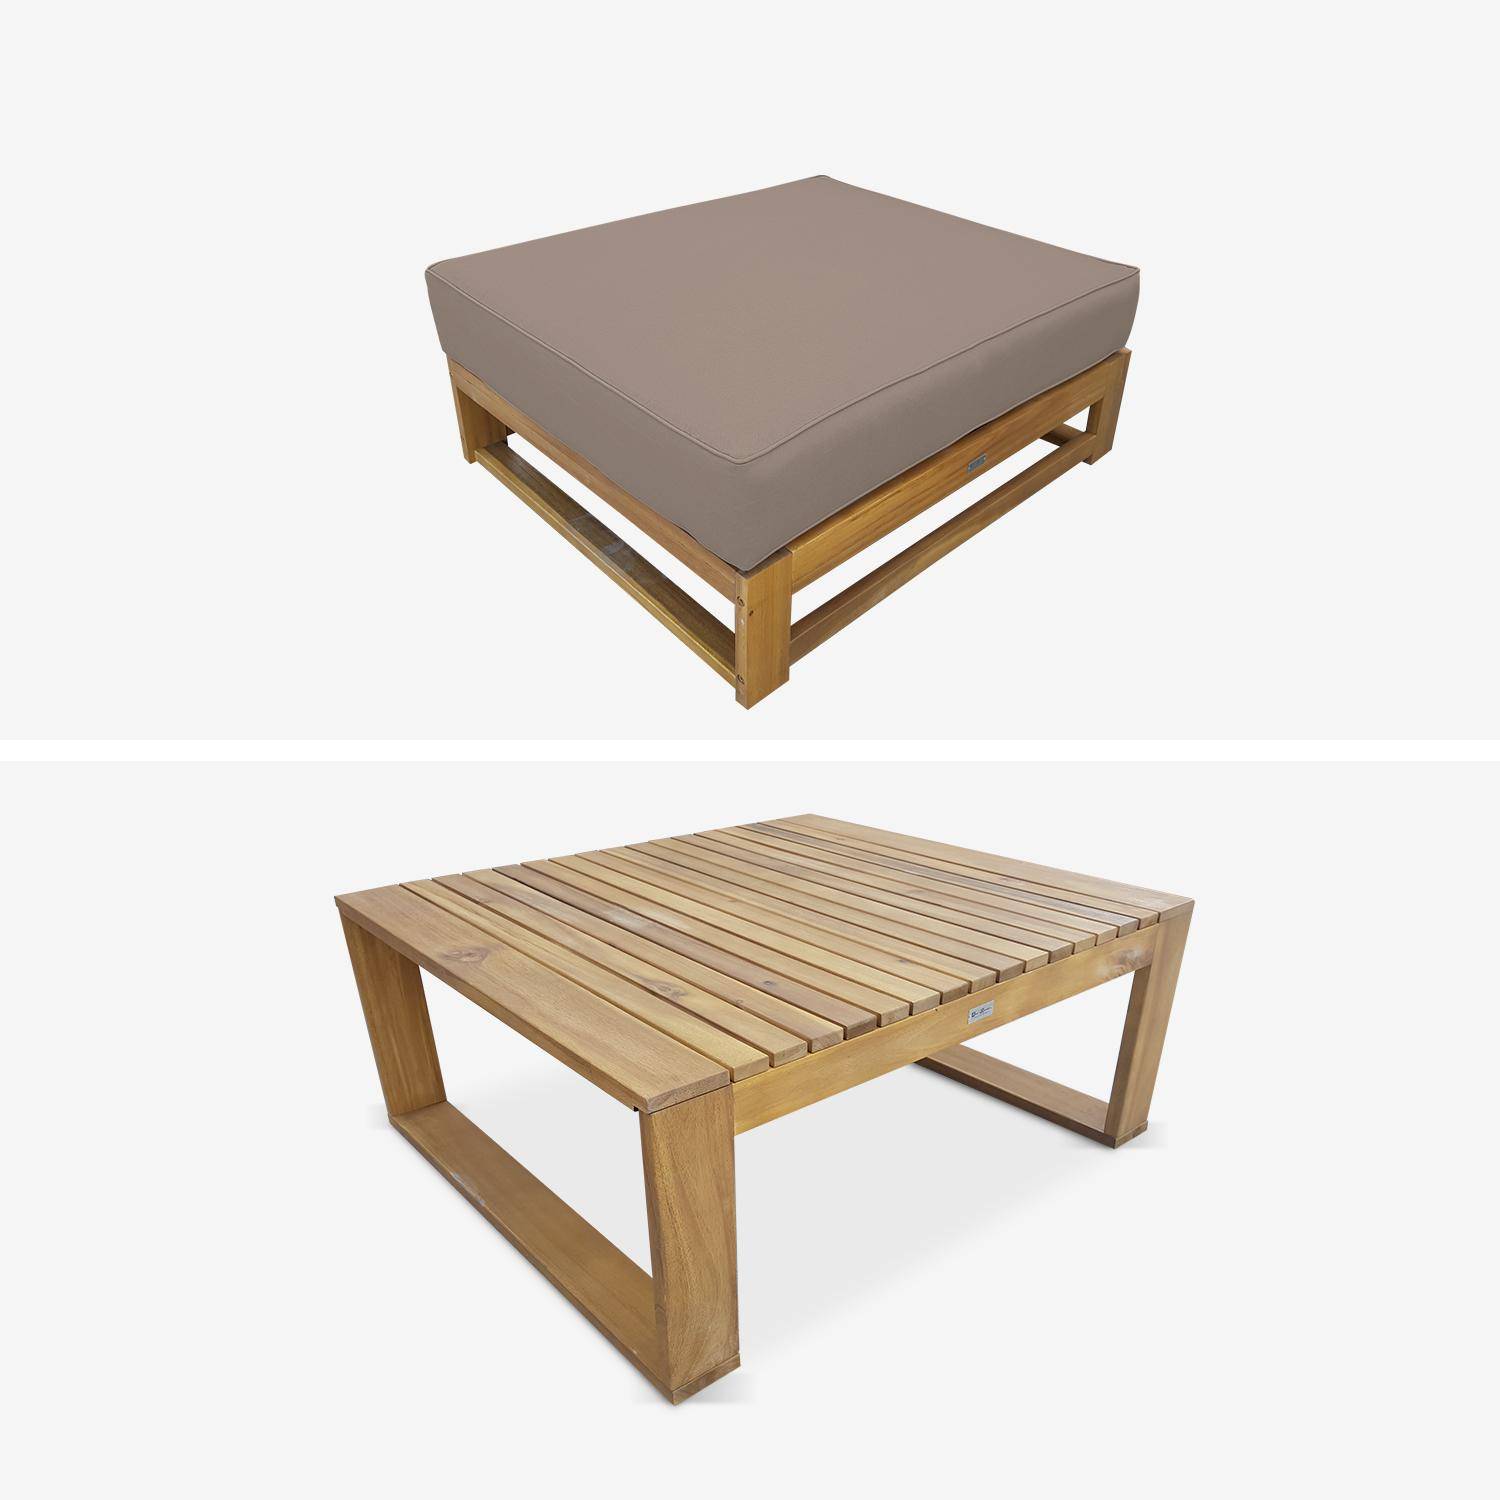 Gartenmöbel aus Holz mit 5 Sitzplätzen - Mendoza - Taupefarbene Kissen, Sofa, Sessel und Couchtisch aus Akazie, 6 modulare Elemente, Design Photo4